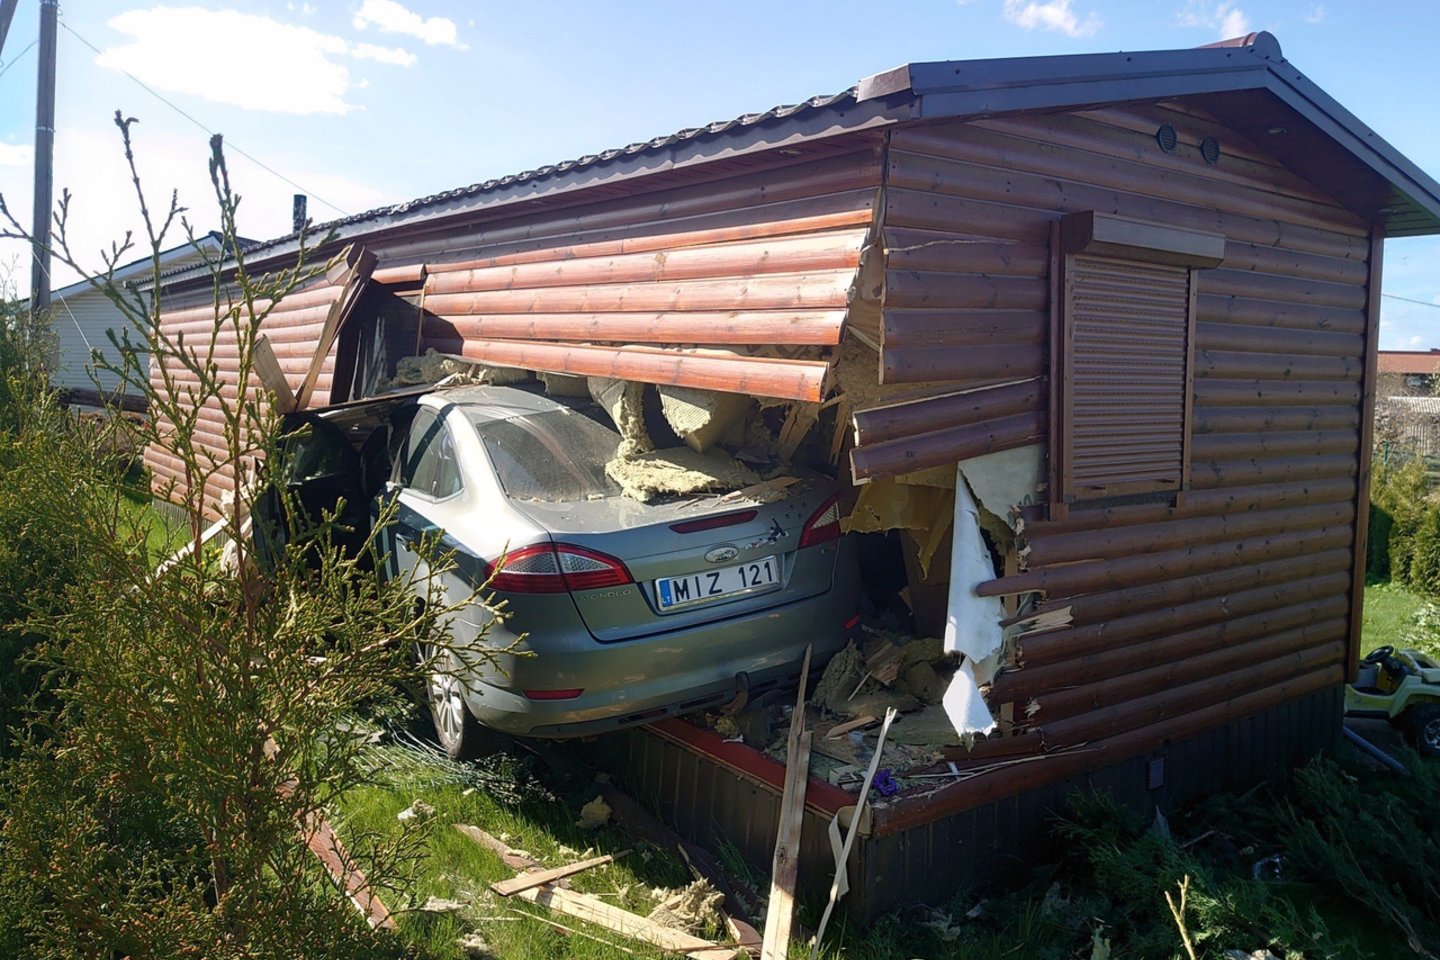  Girto vairuotojo automobilis Vilniuje sugriovė namą.<br> valstietis.lt nuotr.